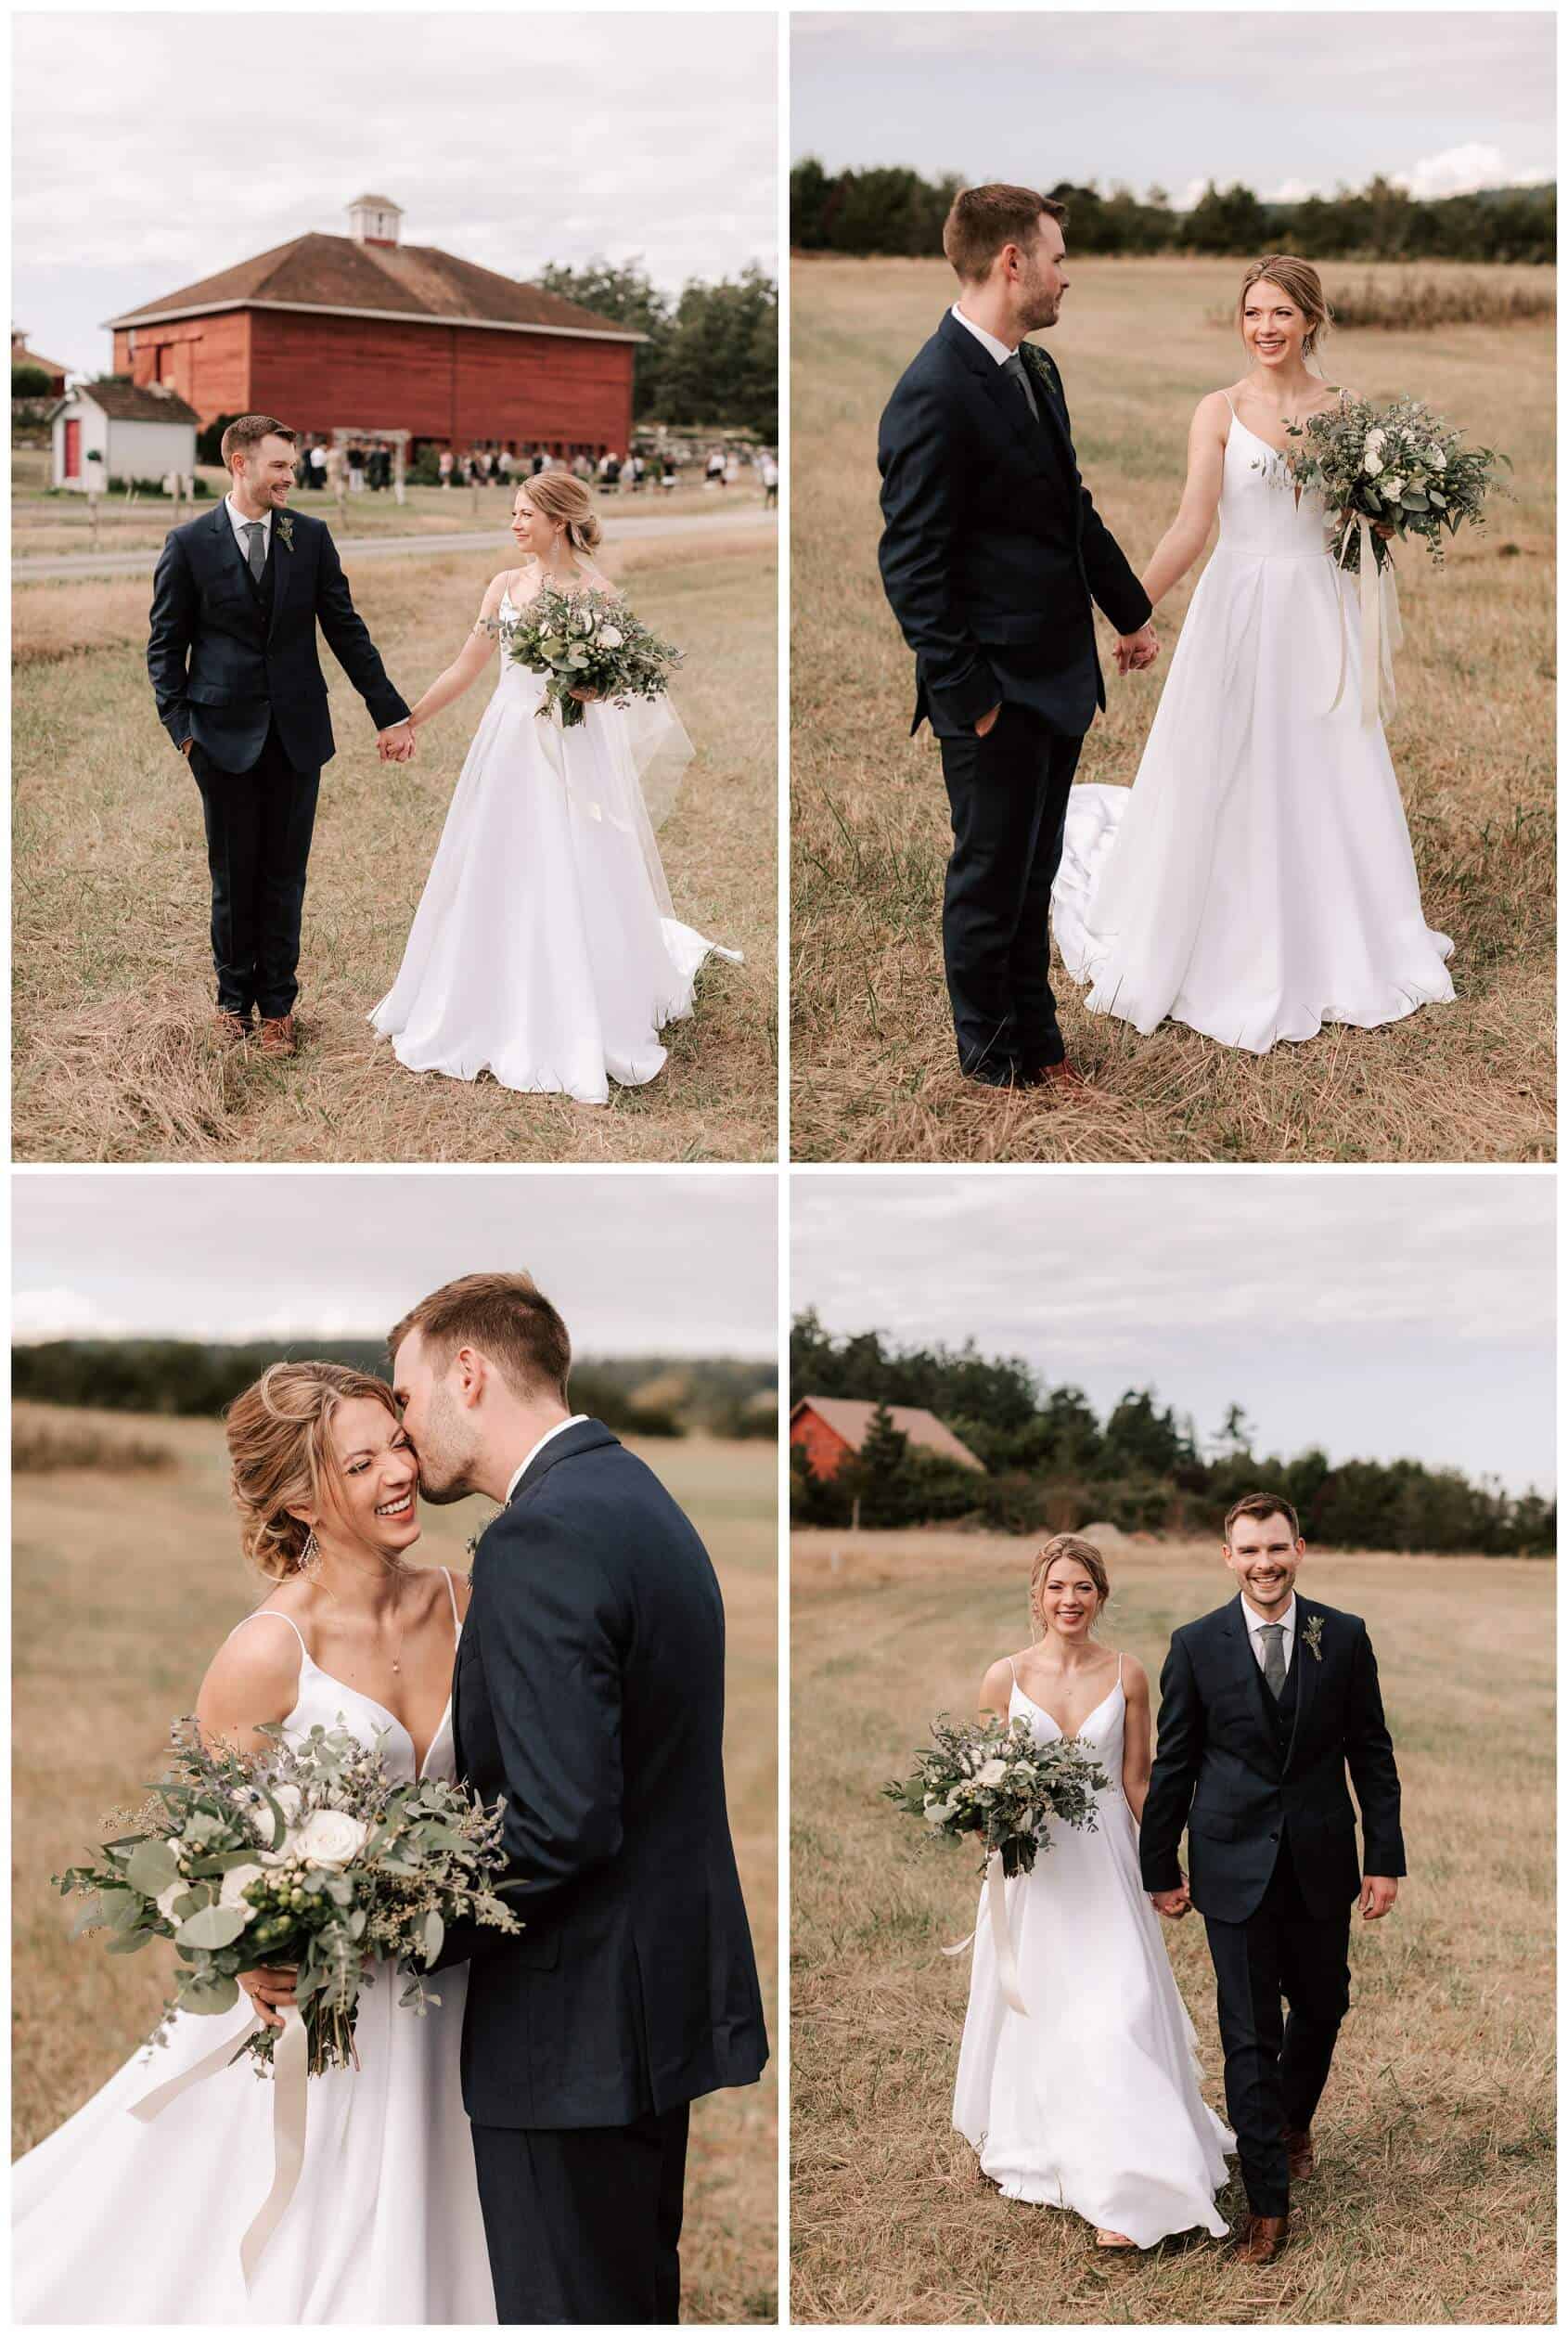 Crockett Farm wedding photos by Whidbey Island Wedding photographer Luma Weddings